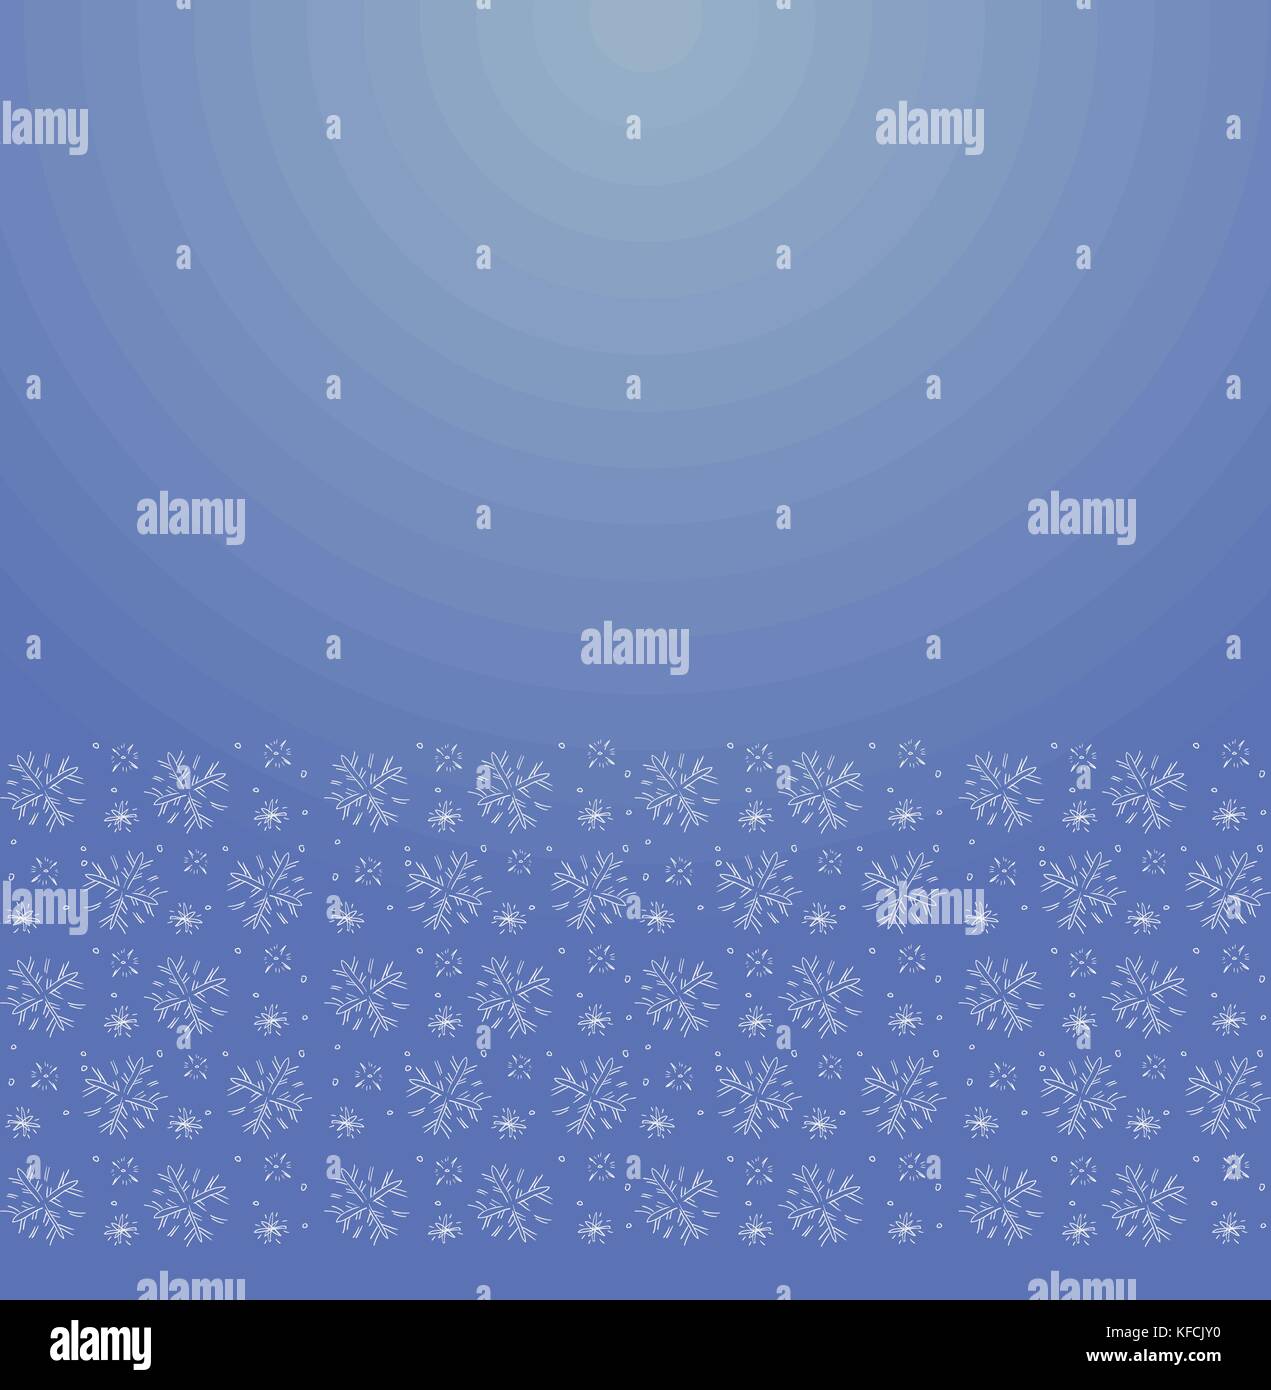 Vektor verzierten Hintergrund mit ornamentalen Rand - blaues Papier mit Schneeflocken doodles Stock Vektor